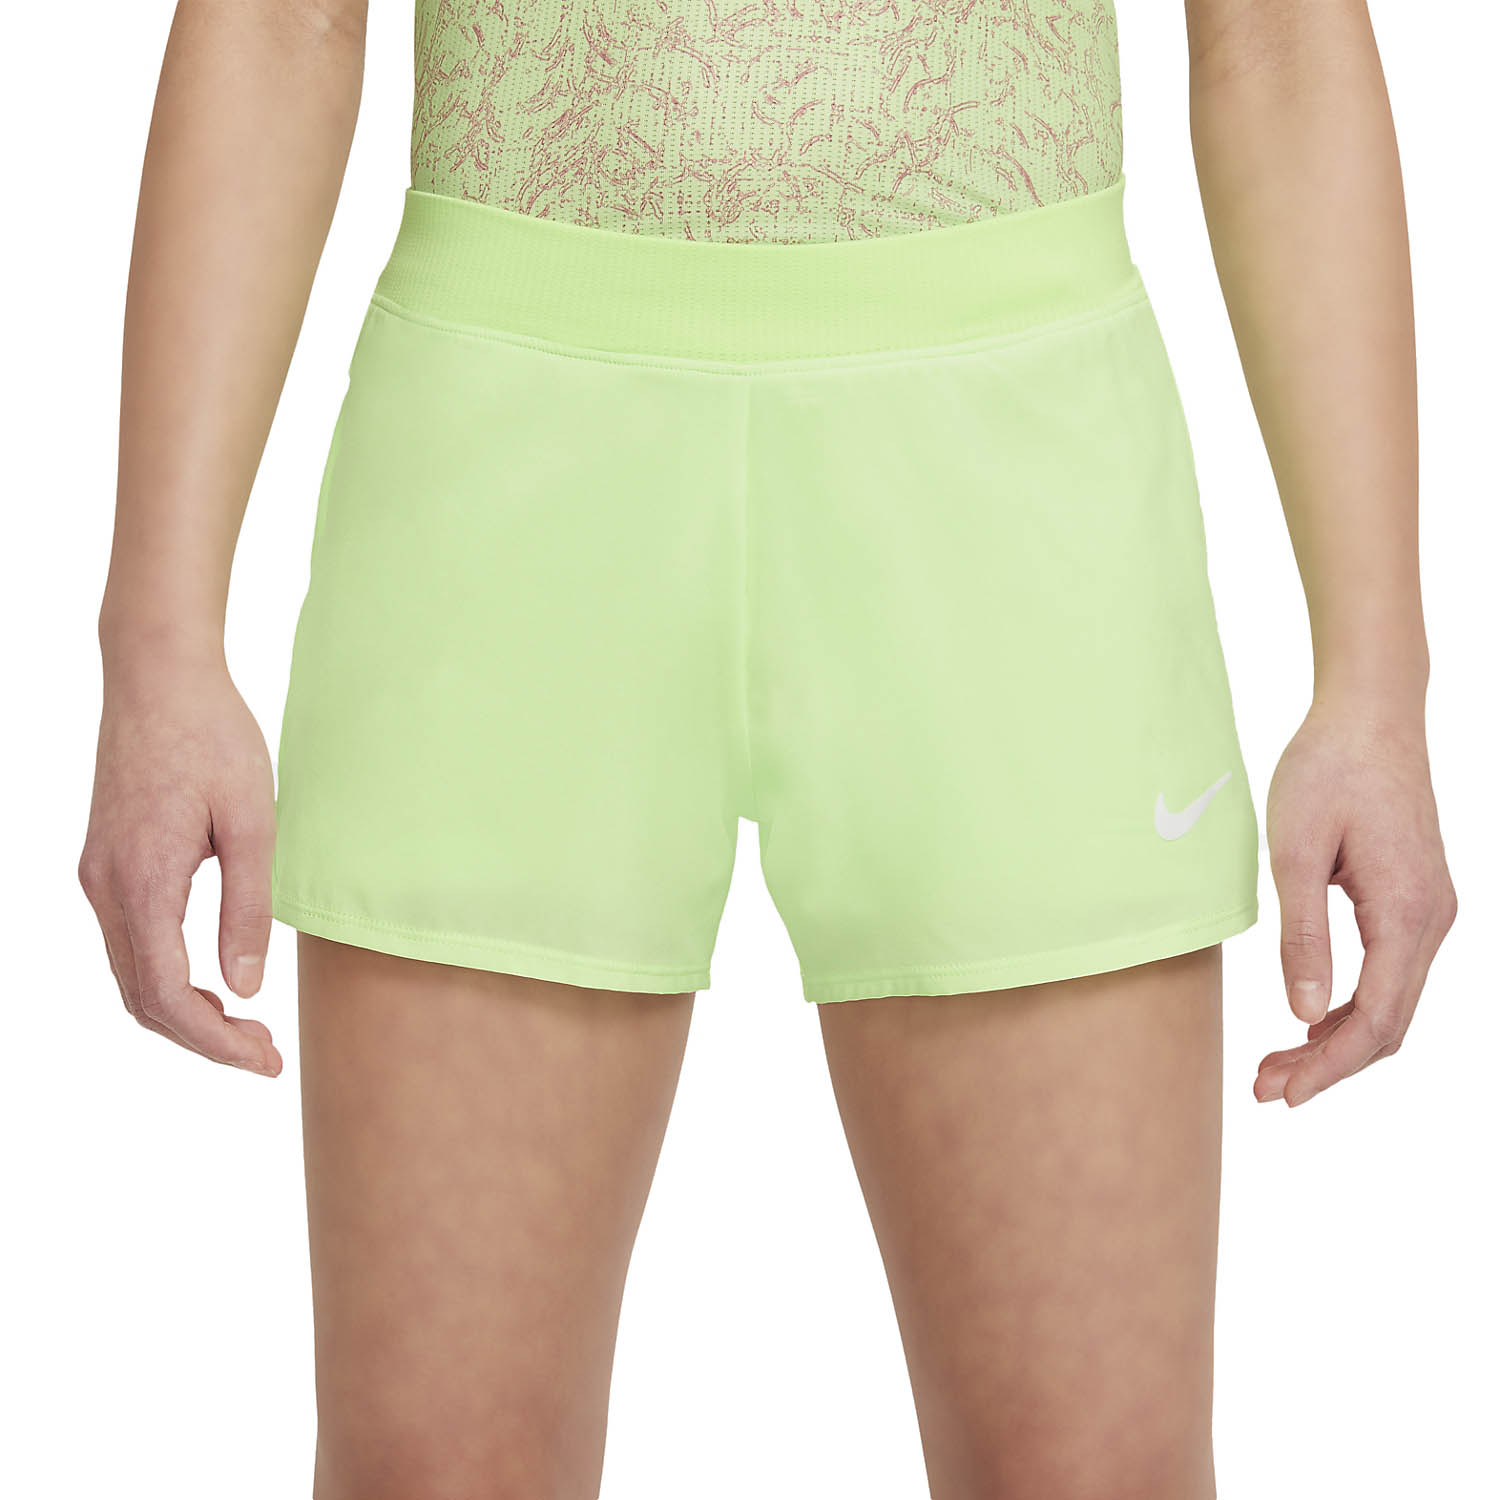 Lime шорты. Шорты Nike Court Dri-Fit Victory. Lime шорты 8140 203 325. Шорты для тенниса женские. Lime шорты розовые.